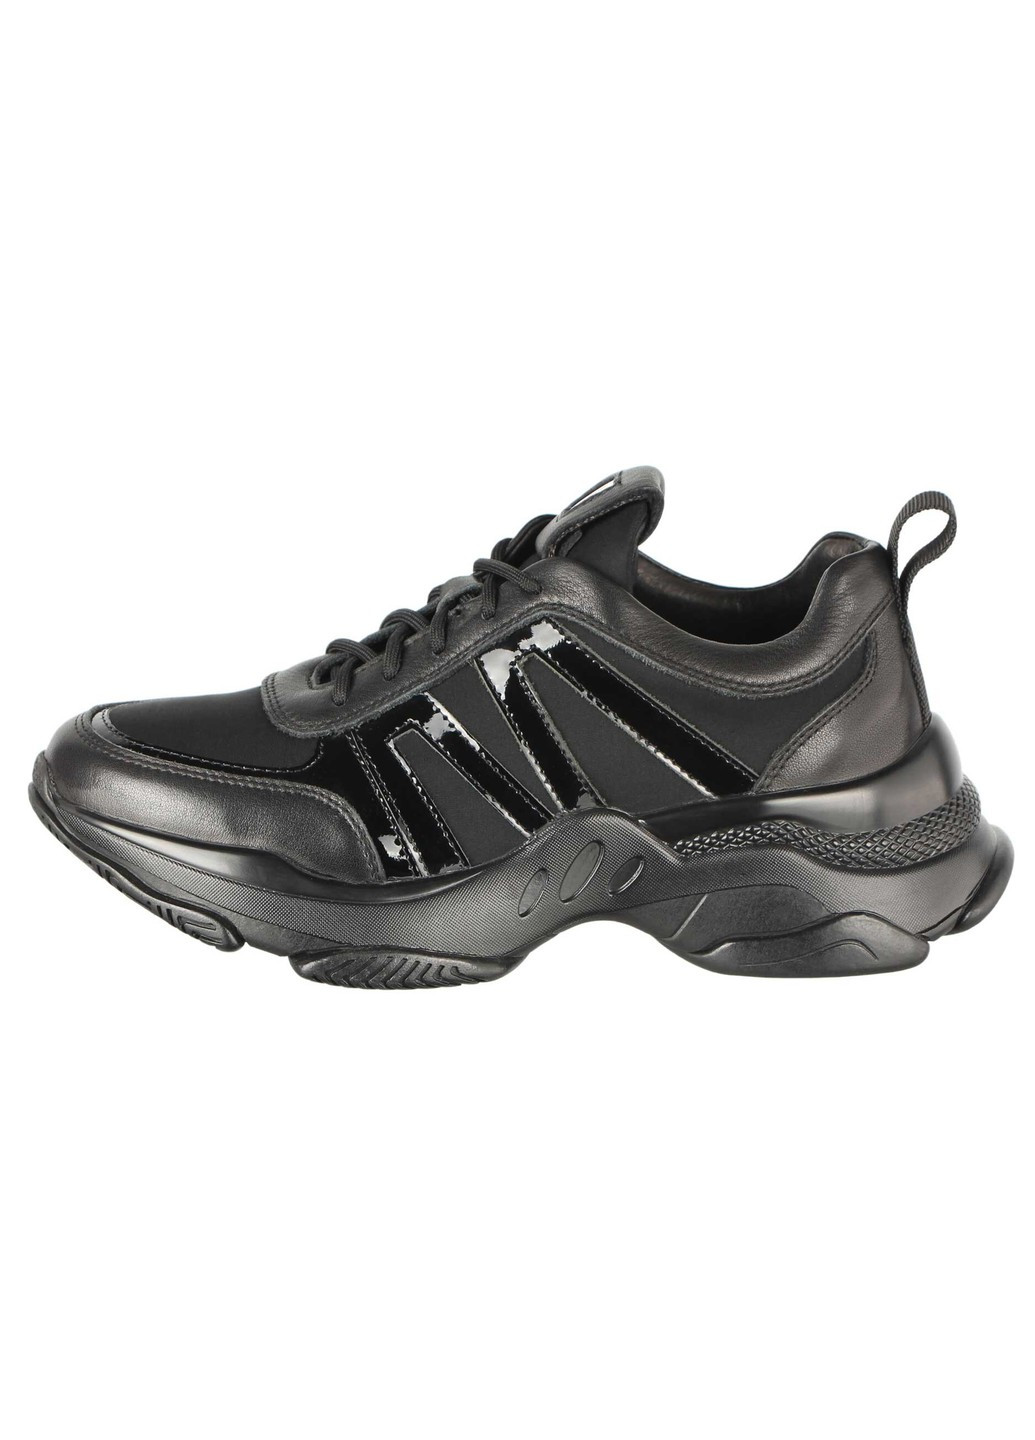 Черные демисезонные женские кроссовки 196434 Buts